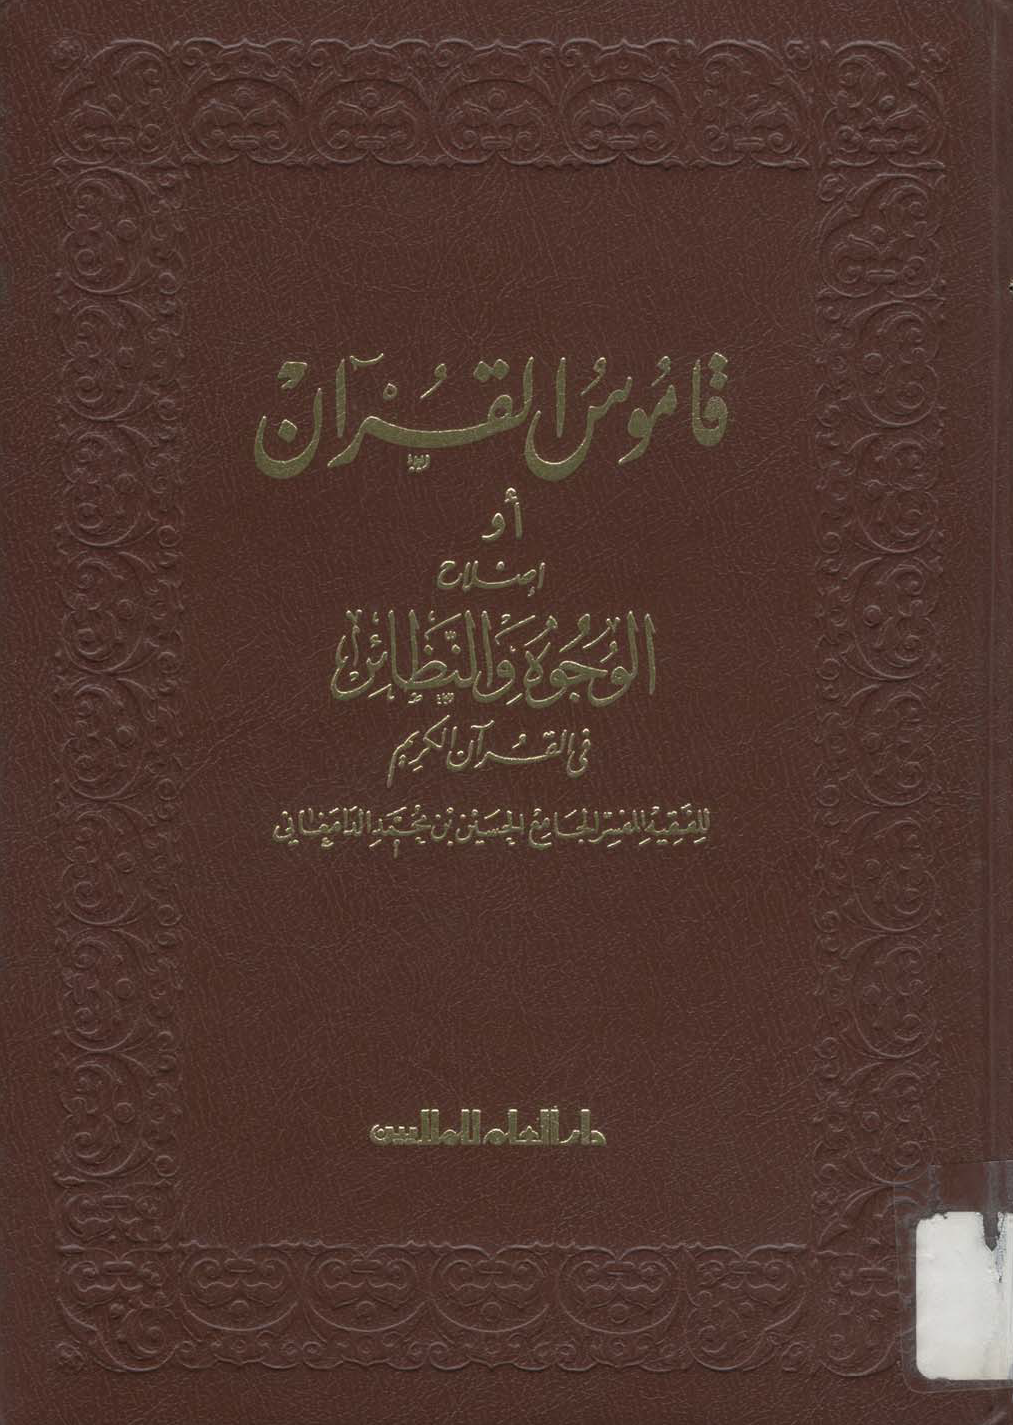 تحميل كتاب قاموس القرآن (إصلاح الوجوه والنظائر في القرآن الكريم) للمؤلف: الإمام أبو عبد الله الحسين بن محمد الدامغاني (ت 478)